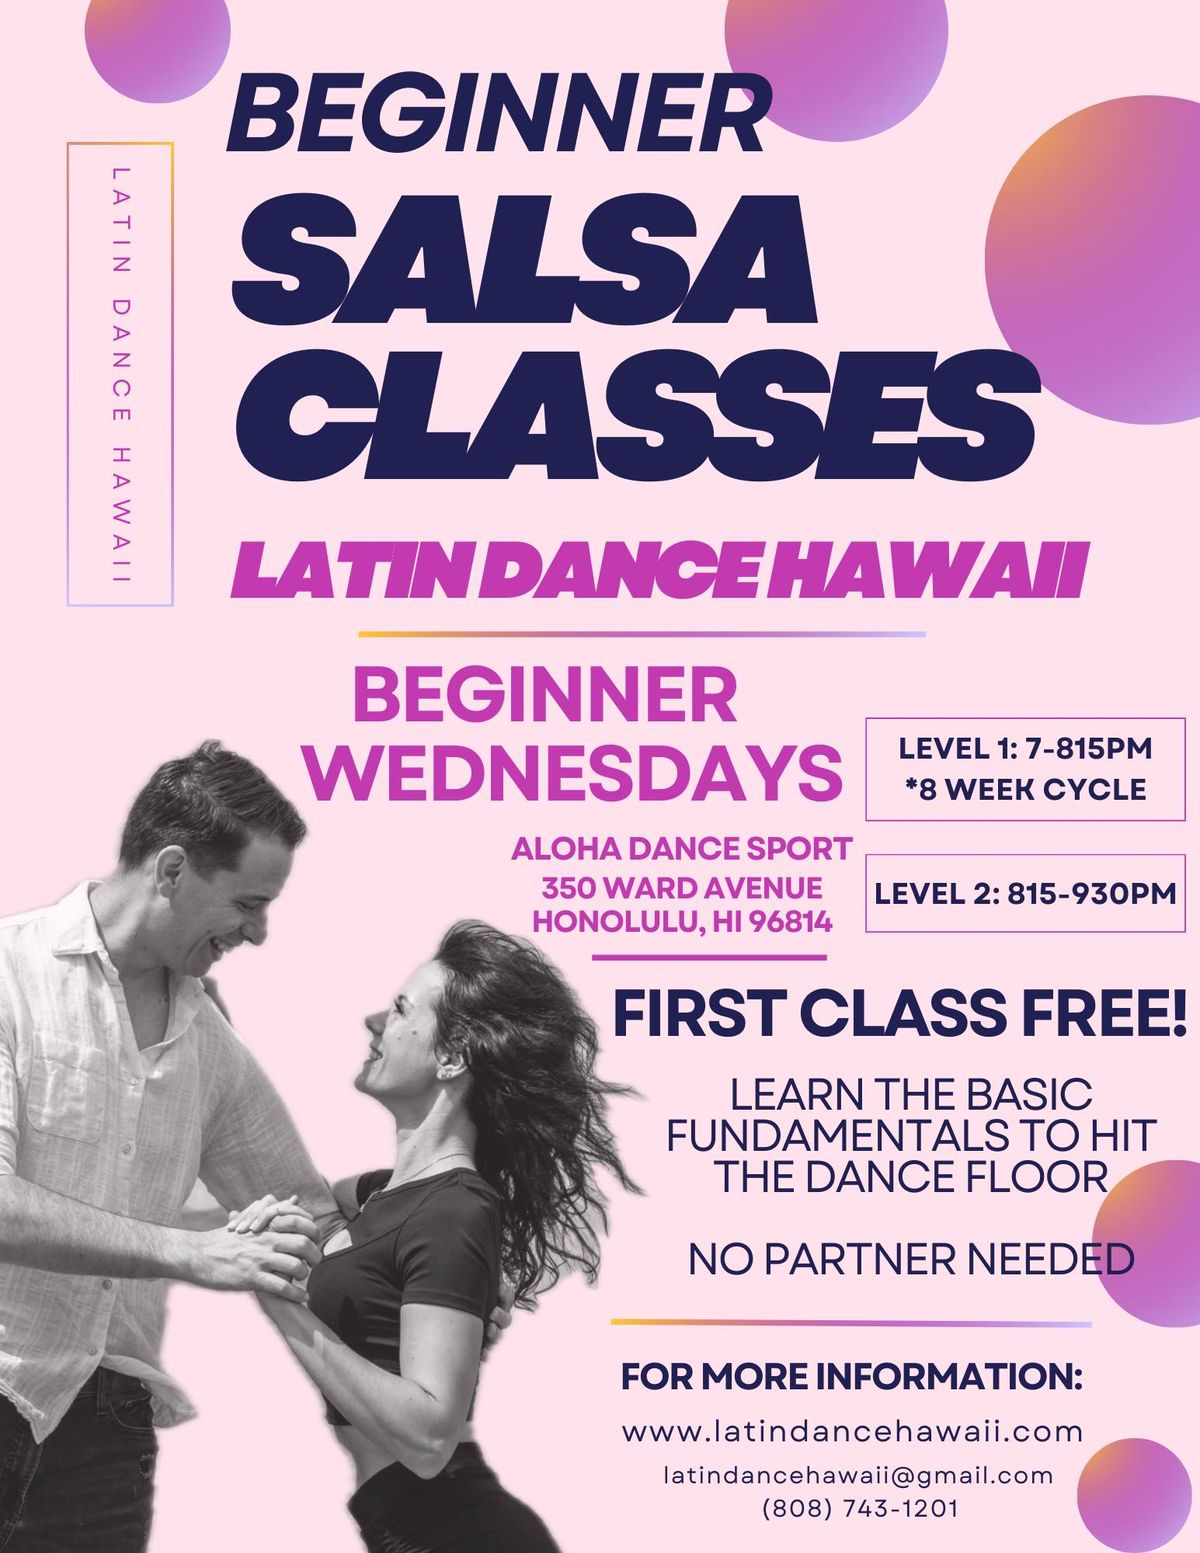 Latin Dance Hawaii: Beginner Wednesdays Salsa Classes